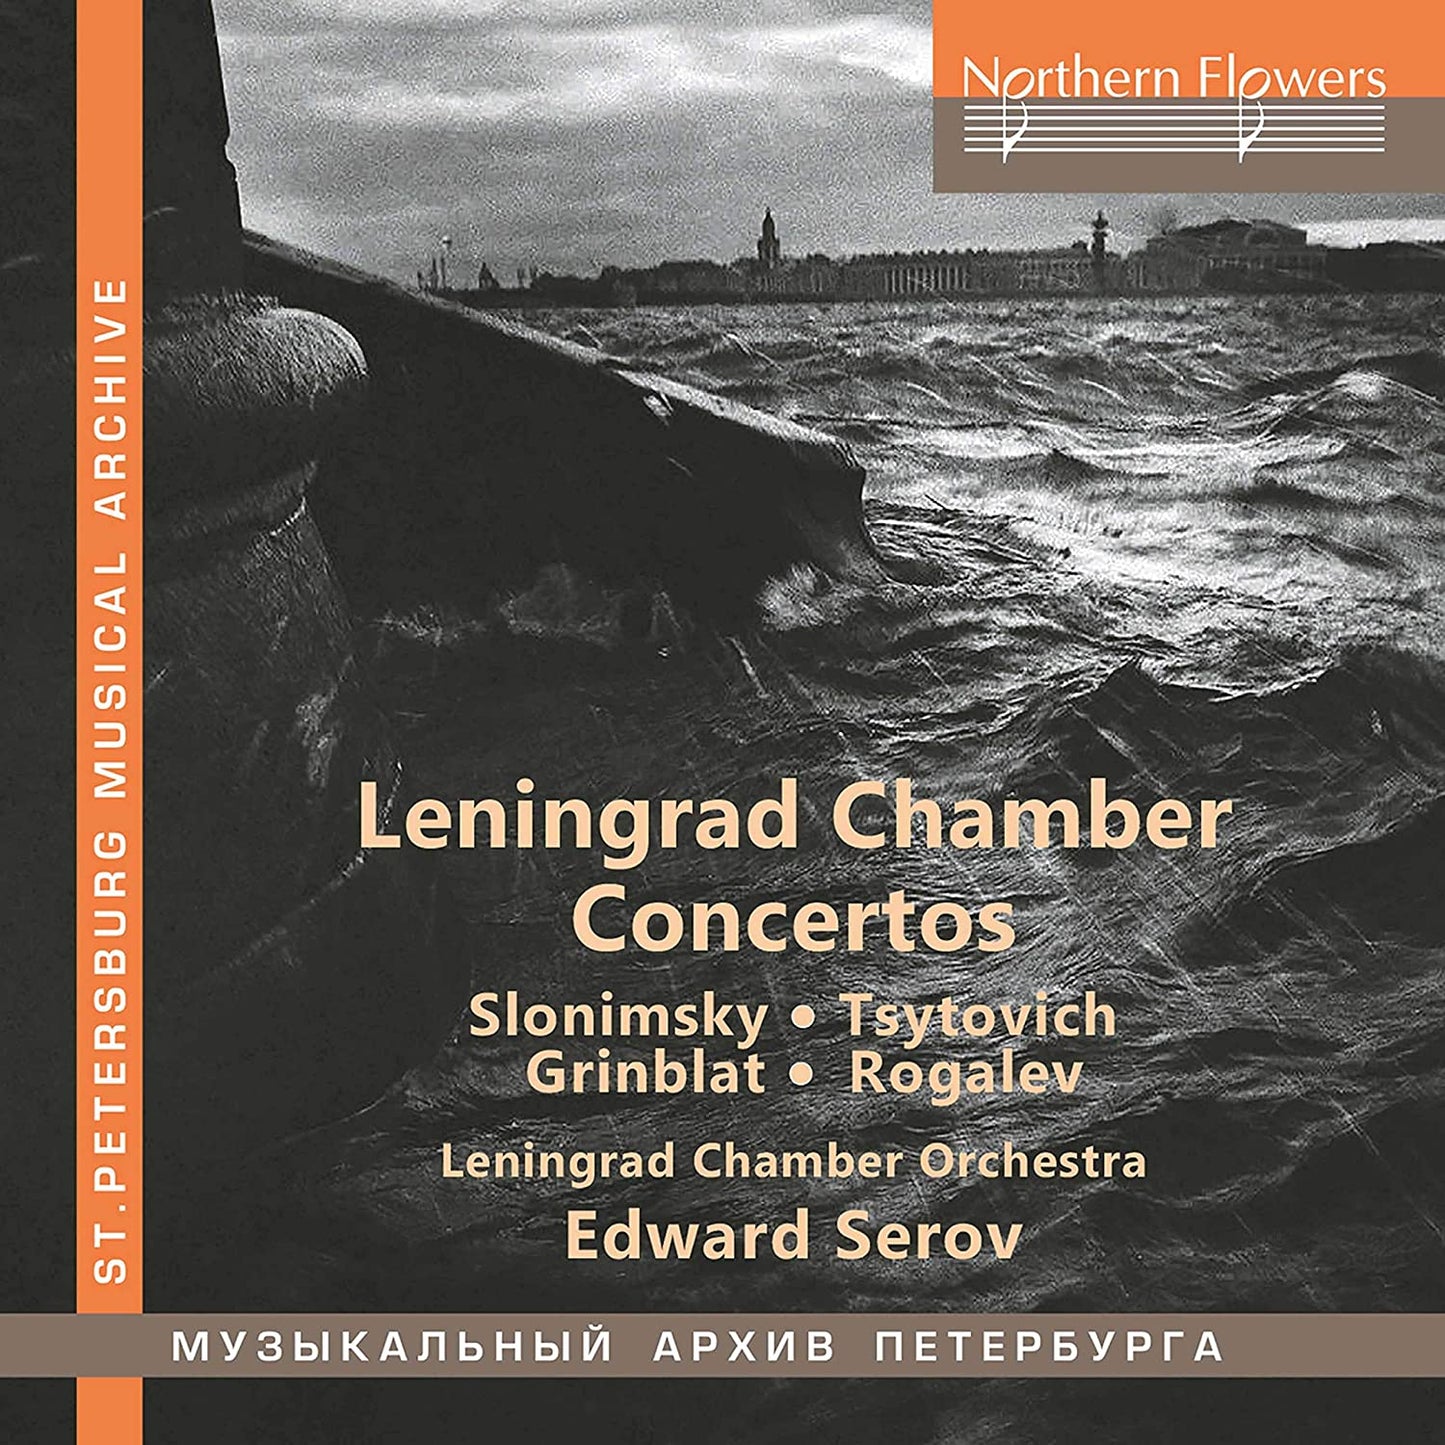 Leningrad Chamber Concertos (Slonimsky, Tsytovich, Grinblat, Rogalev) - Leningrad Chamber Orchestra